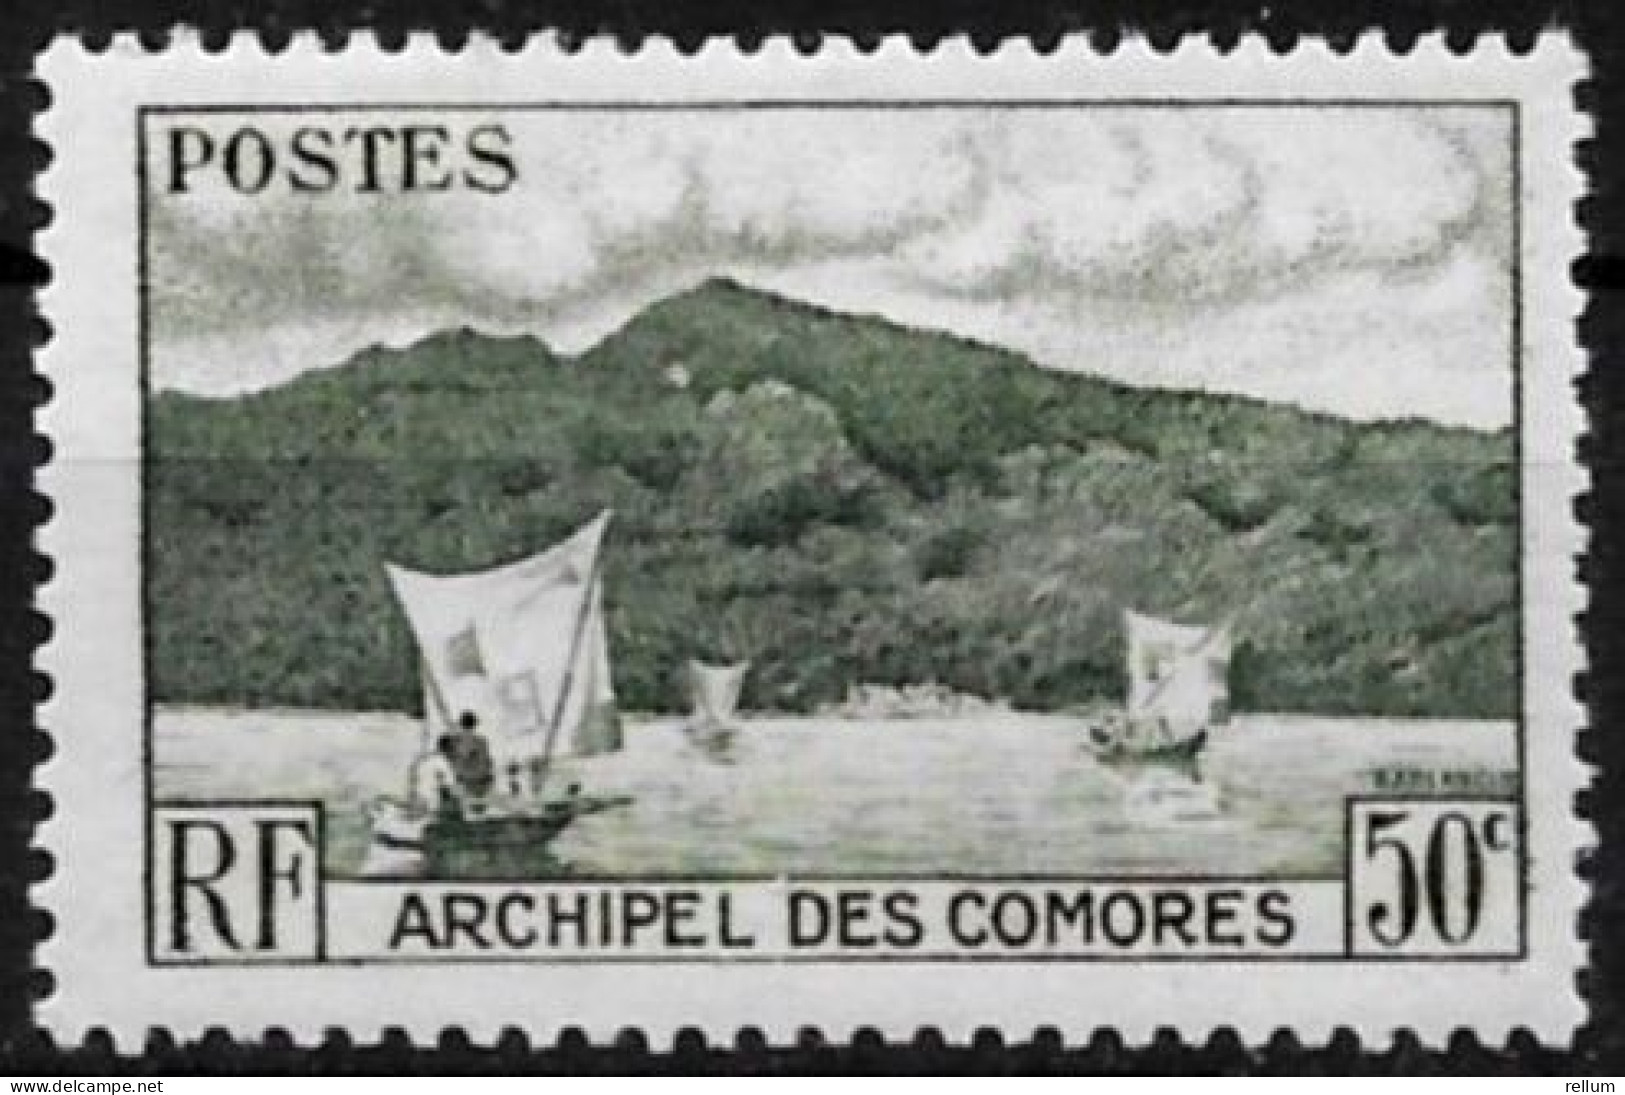 Comores 1950 - Yvert N° 2 - Michel N° 21 ** - Unused Stamps